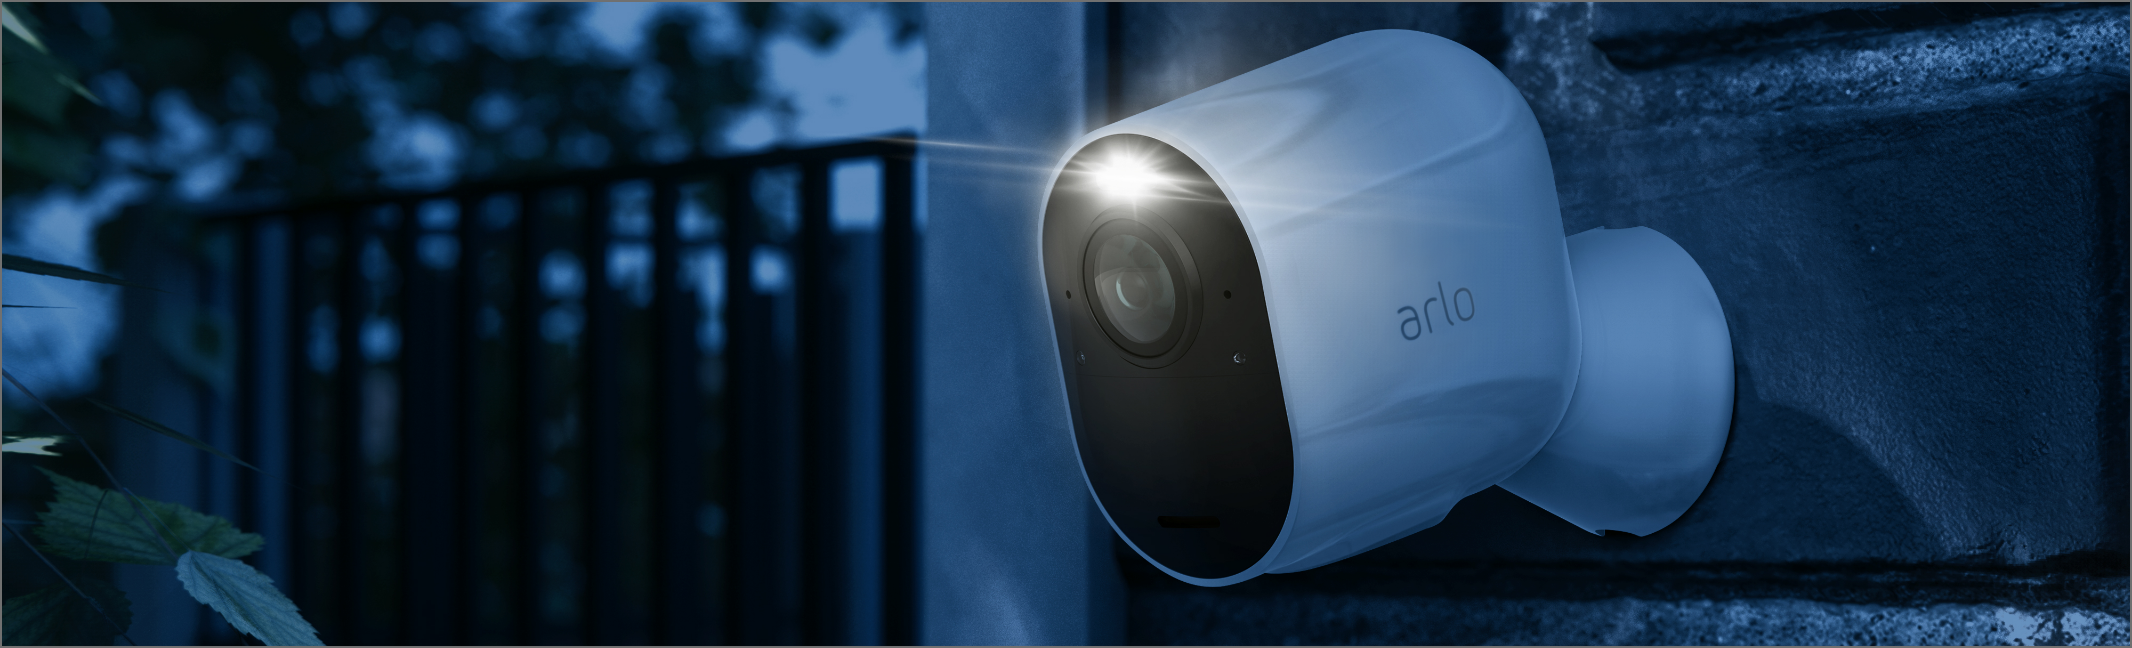 La caméra de surveillance Arlo Ultra accrochée contre un mur qui filme dans la nuit avec son projecteur intégré.